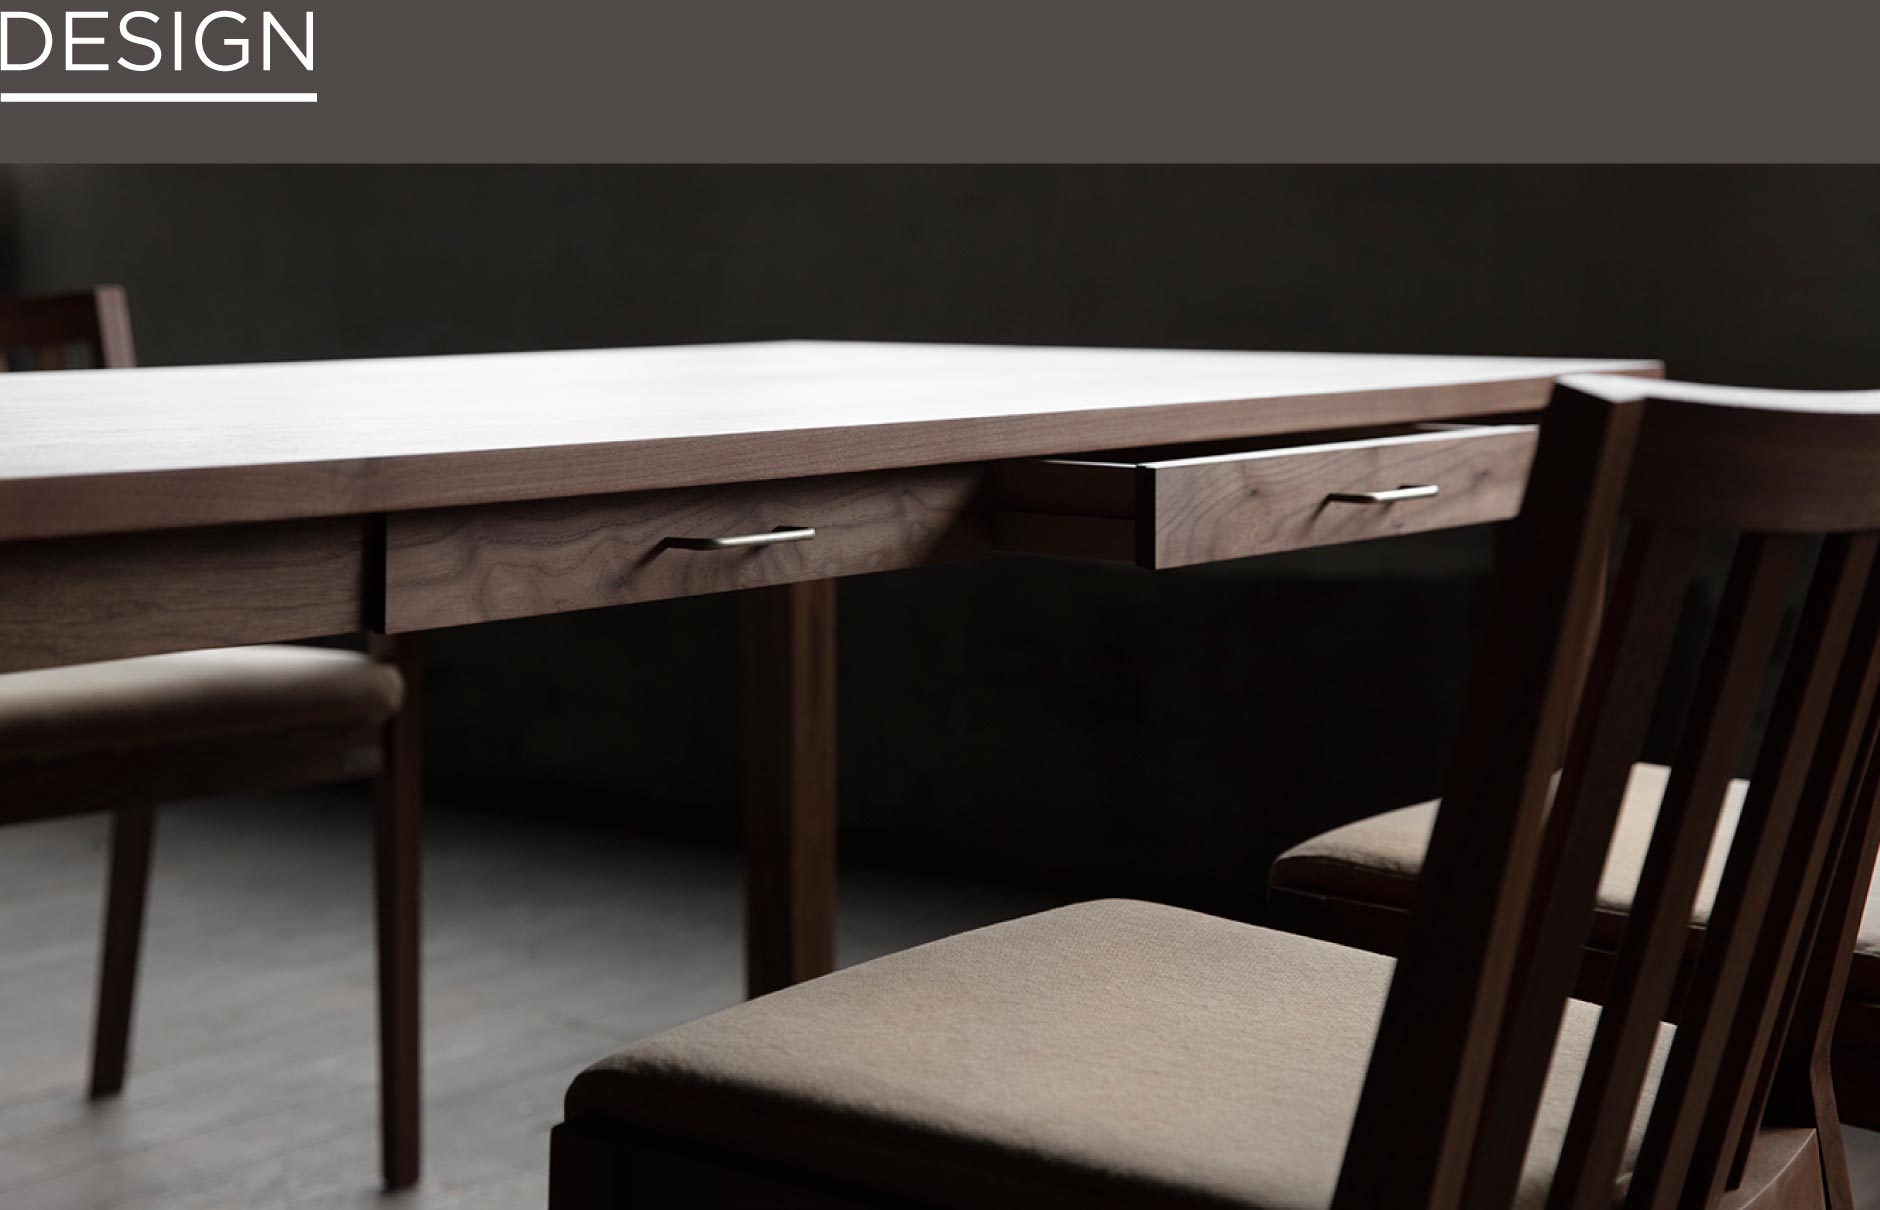 エッジのきいたデザインカットで陰影を生み、引出には真鍮などの異素材を組み合わせたSOLID福岡の家具の中でもスタイリッシュなテーブル。